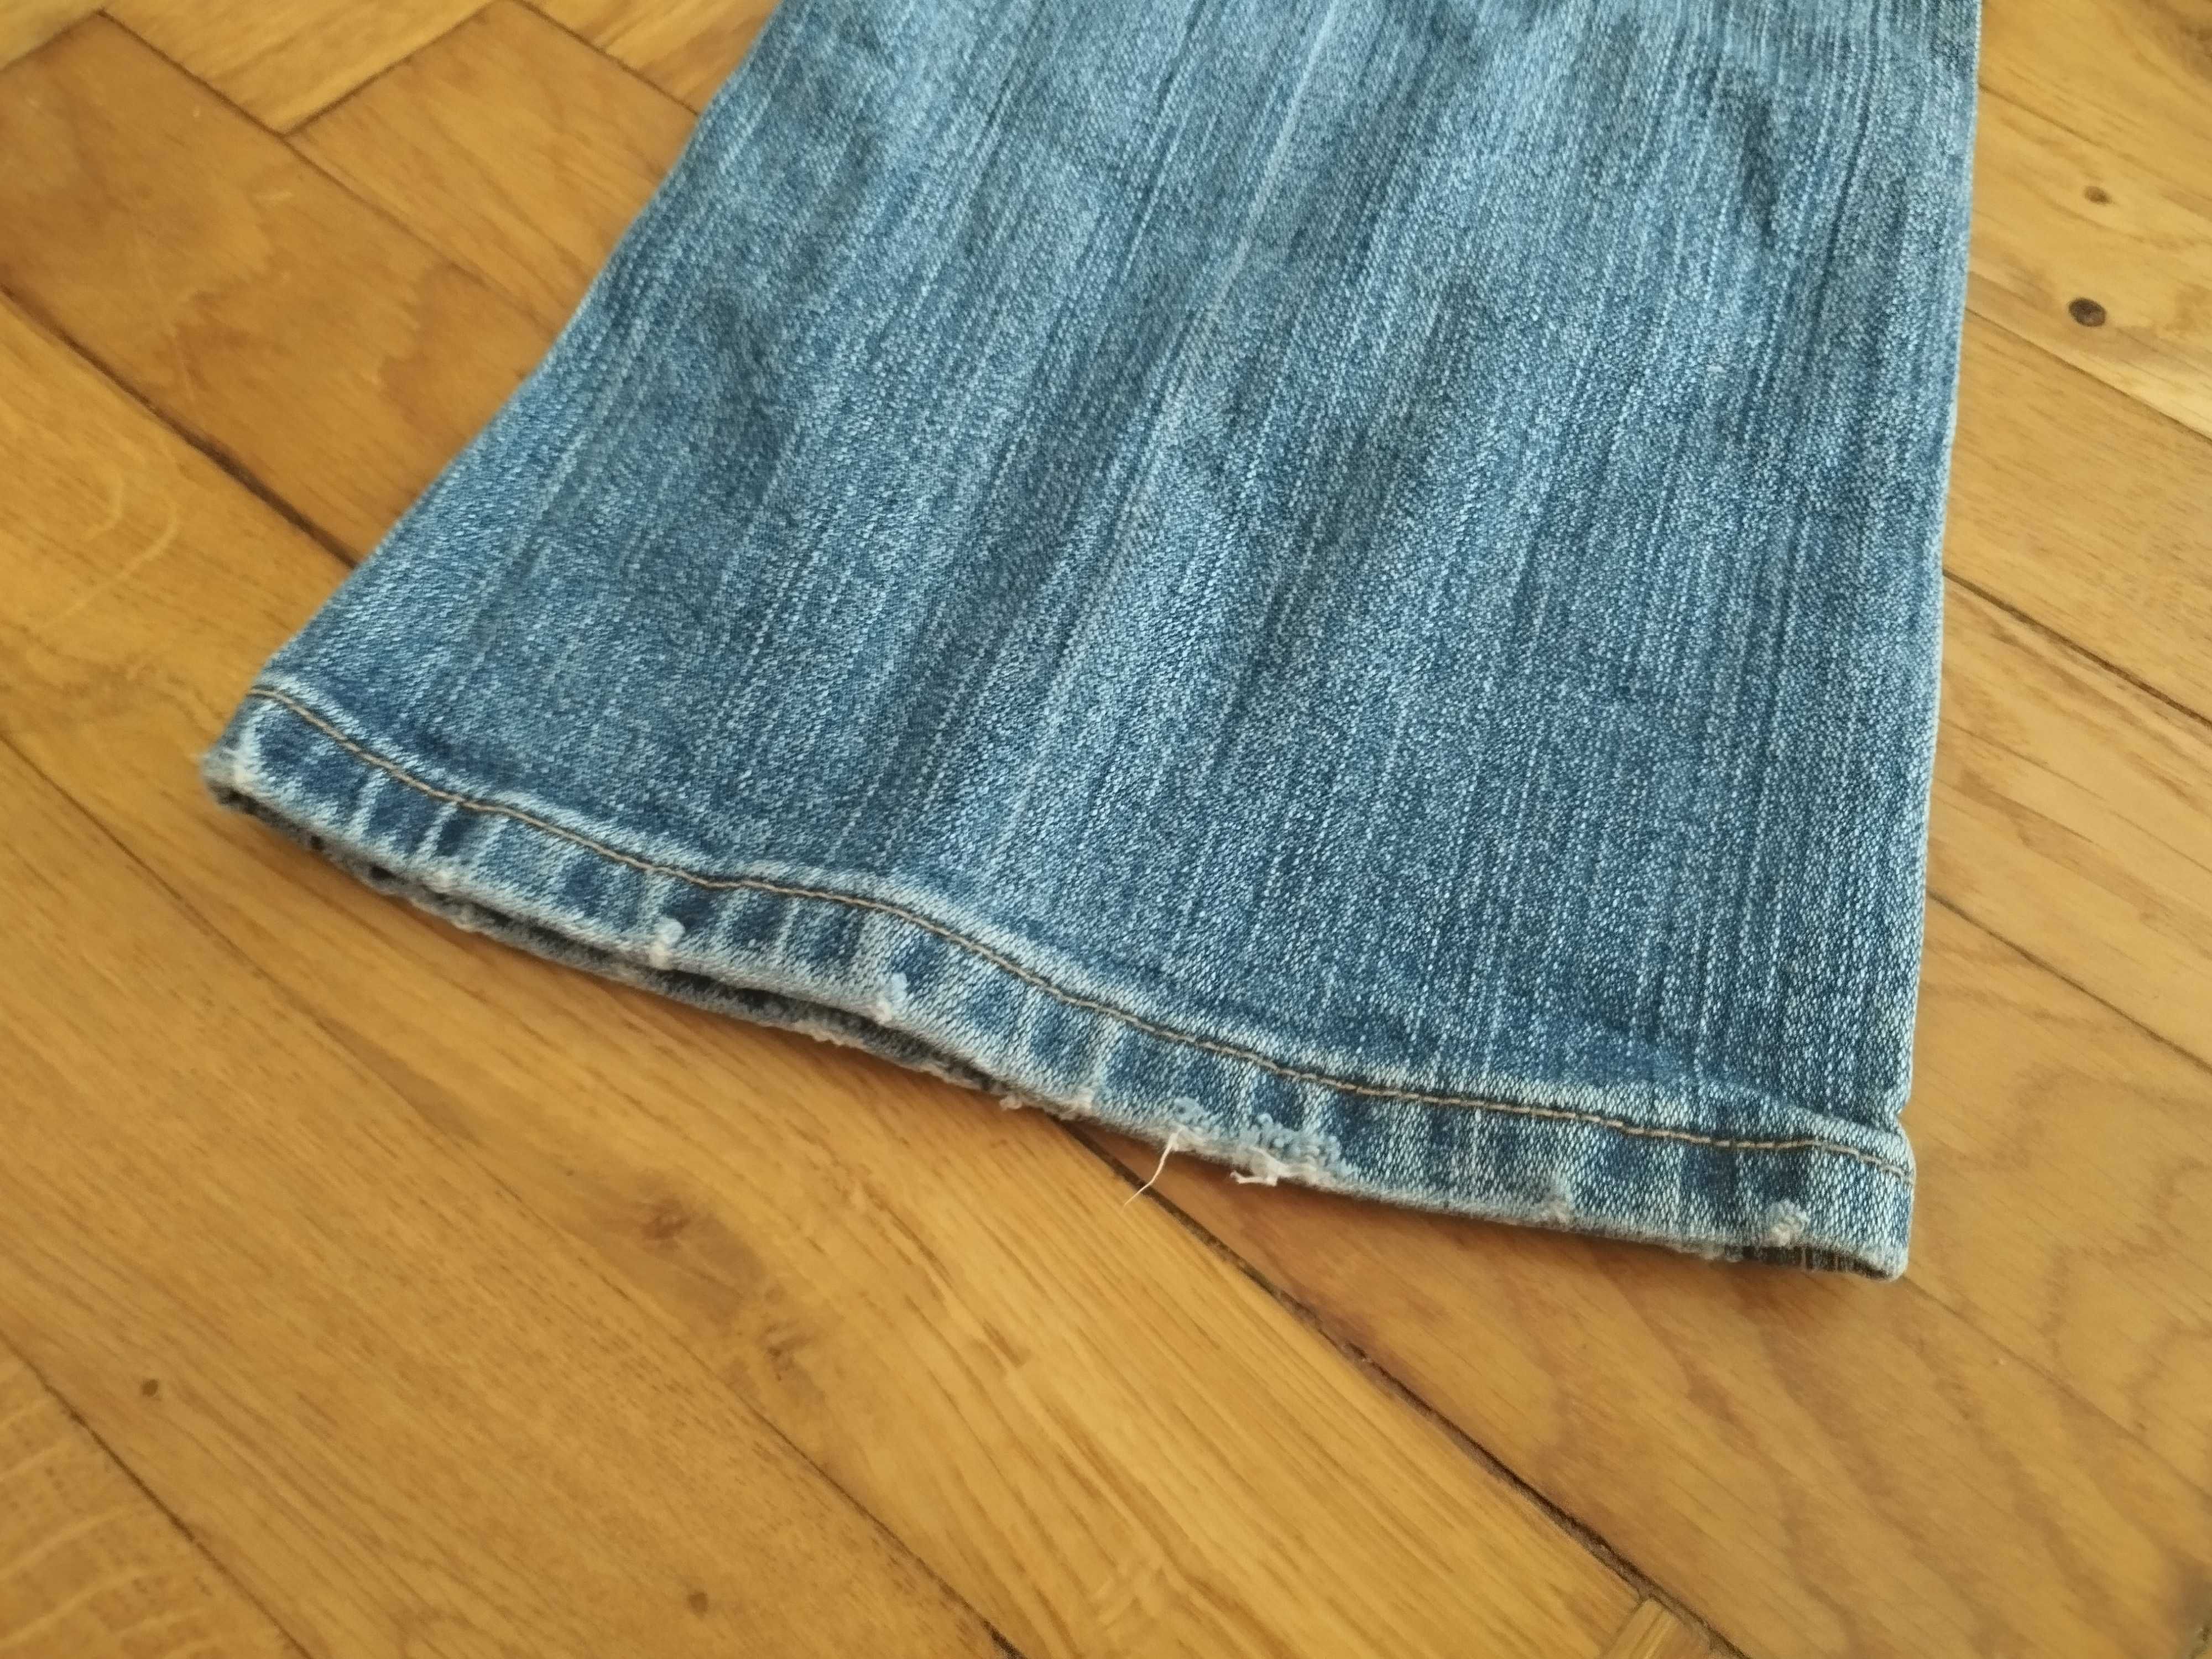 Spodnie damskie Dorothy Perkins, roz. 36/38 dżinsowe jeansy niebieskie